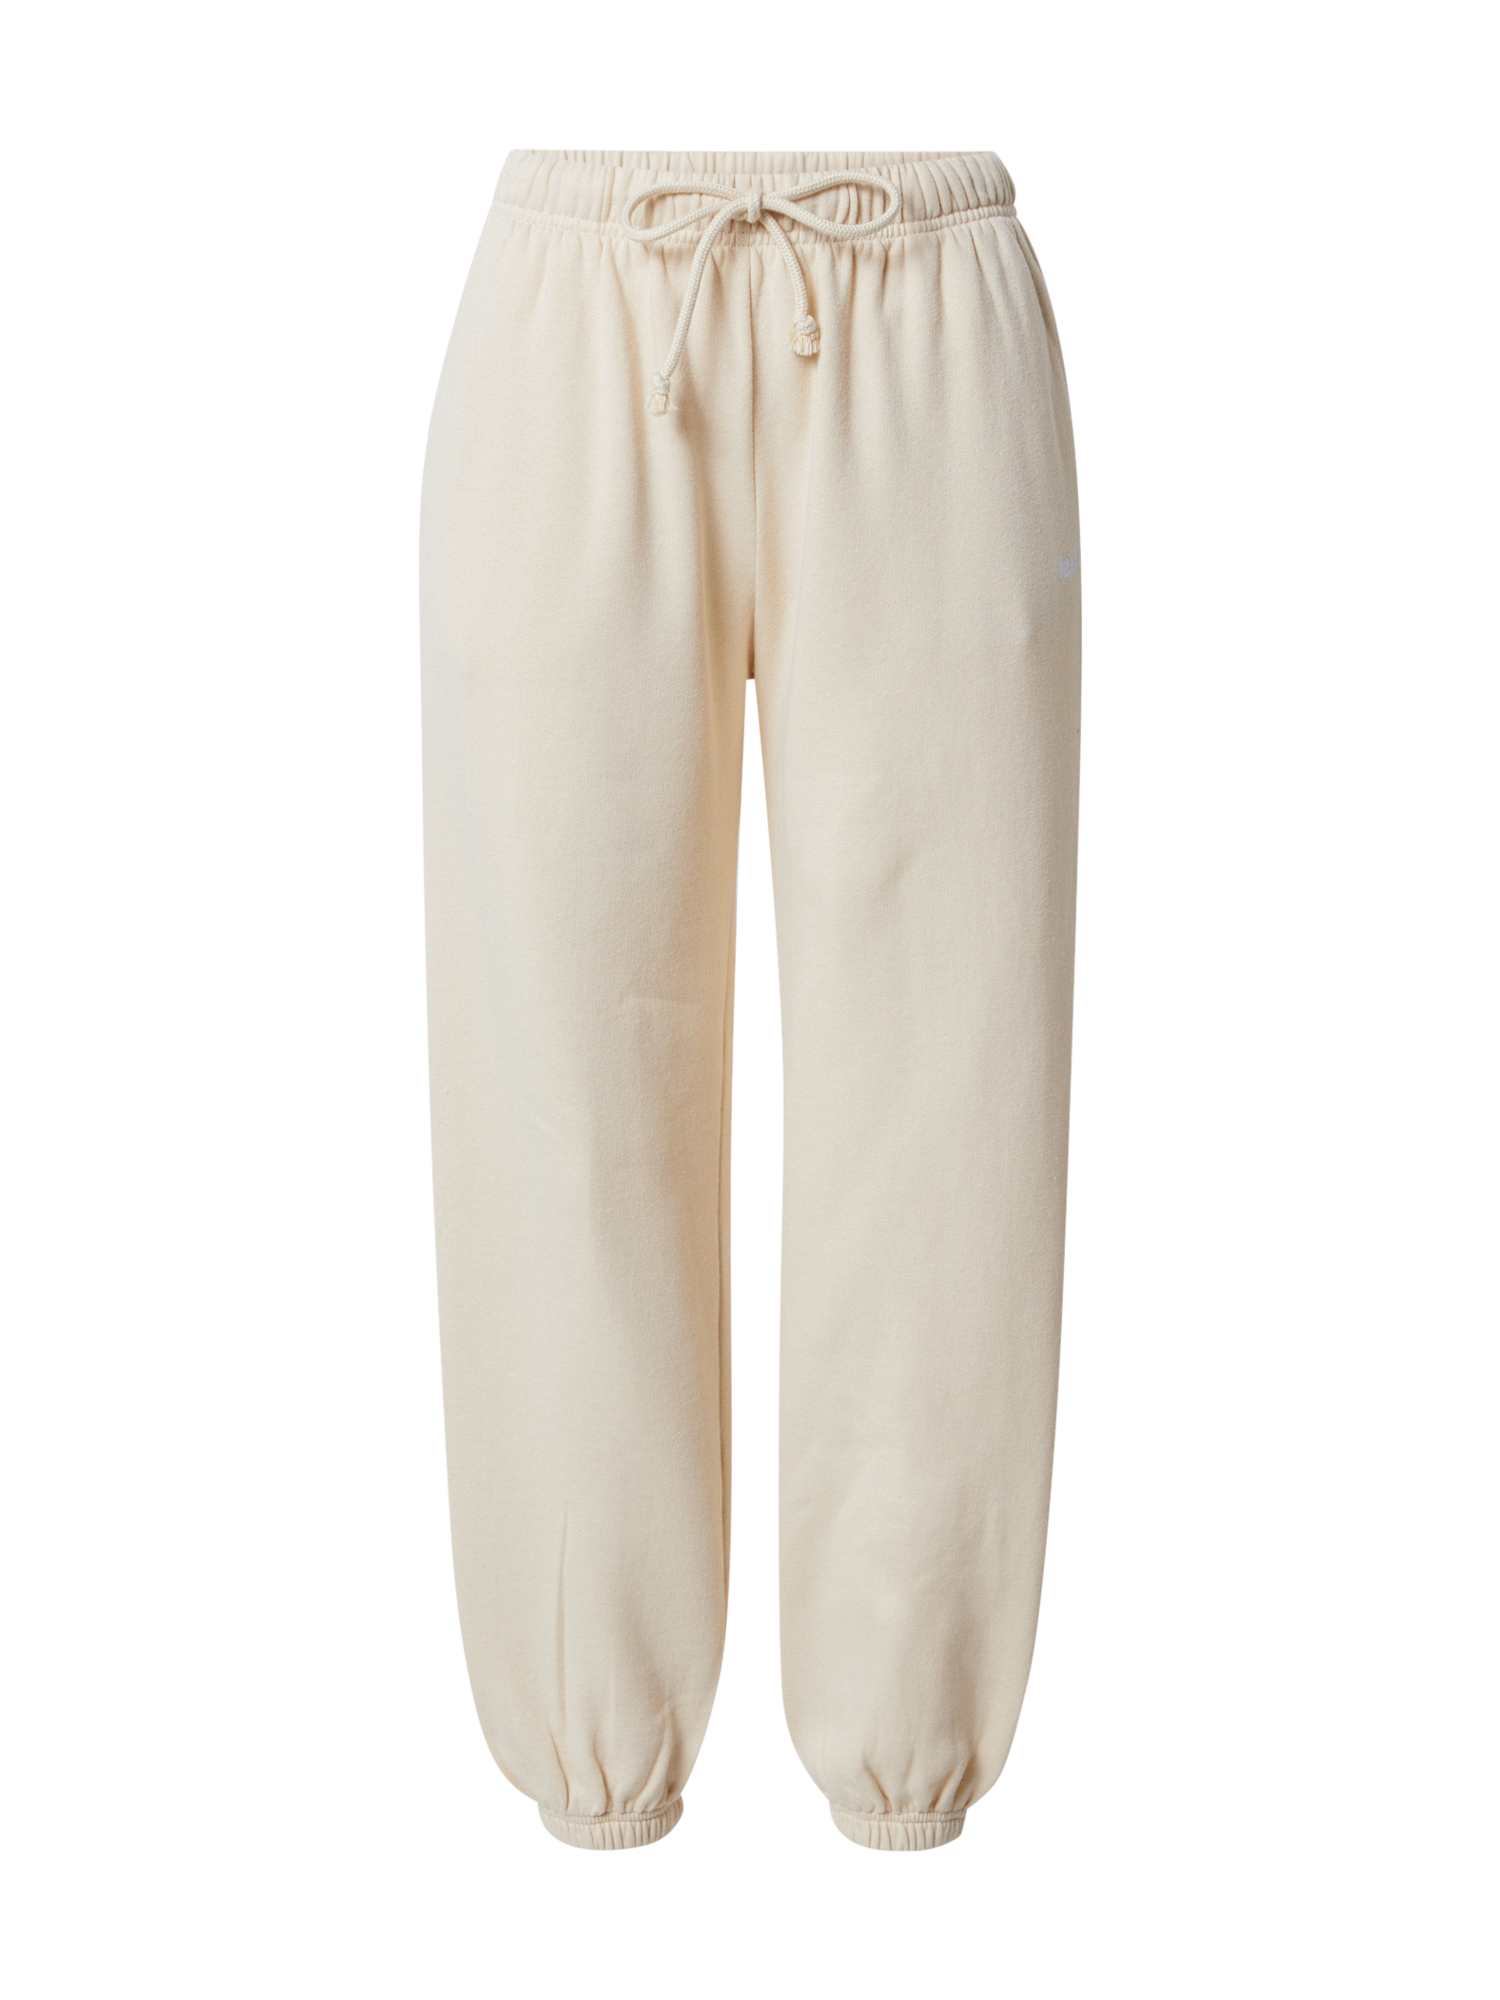 Odzież Spodnie LEVIS Spodnie LAUNDRY DAY w kolorze Beżowym 